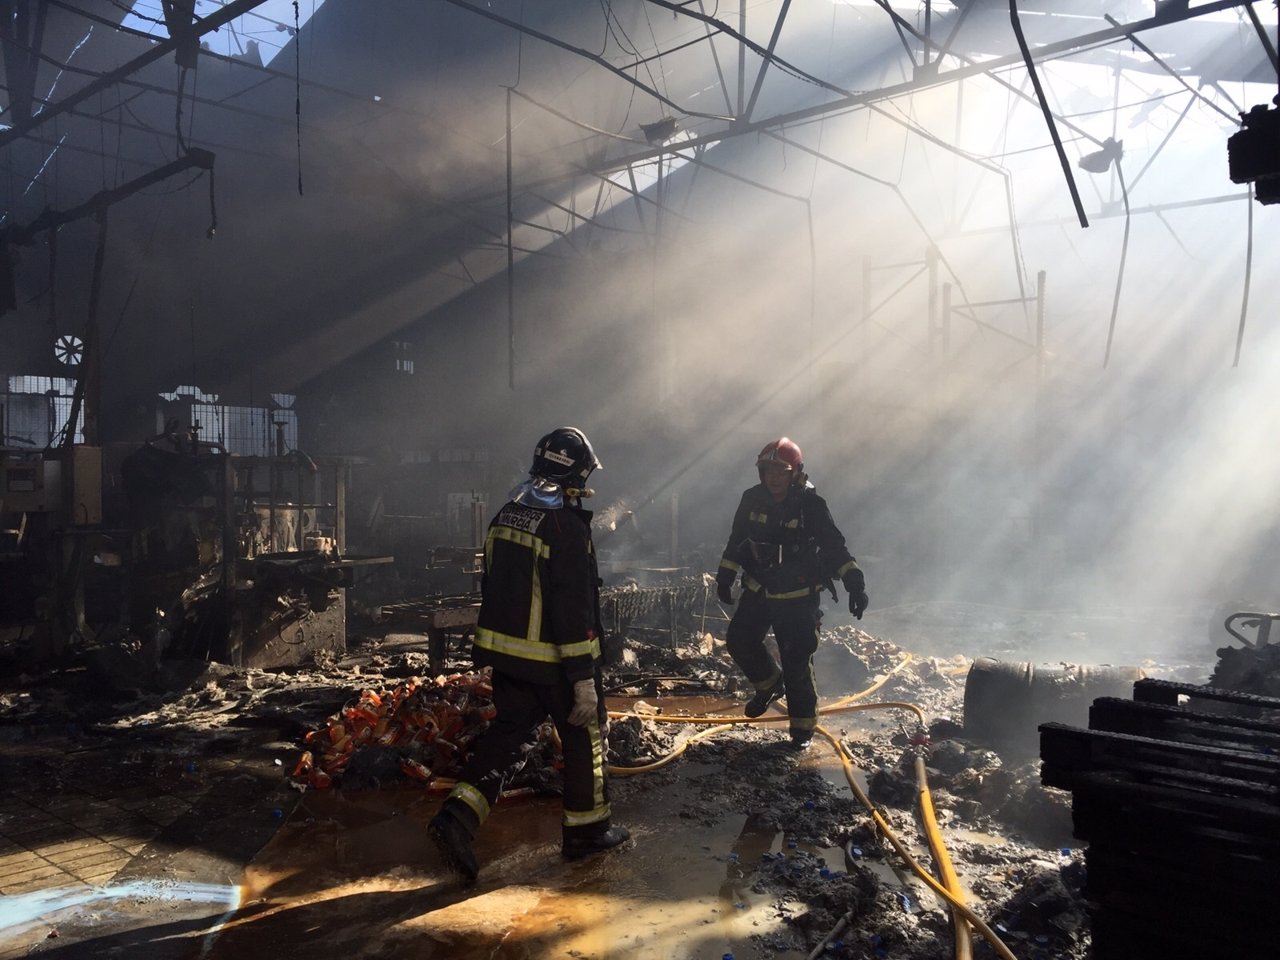 Bomberos intervienen en incendio de una fábrica en El Palmar